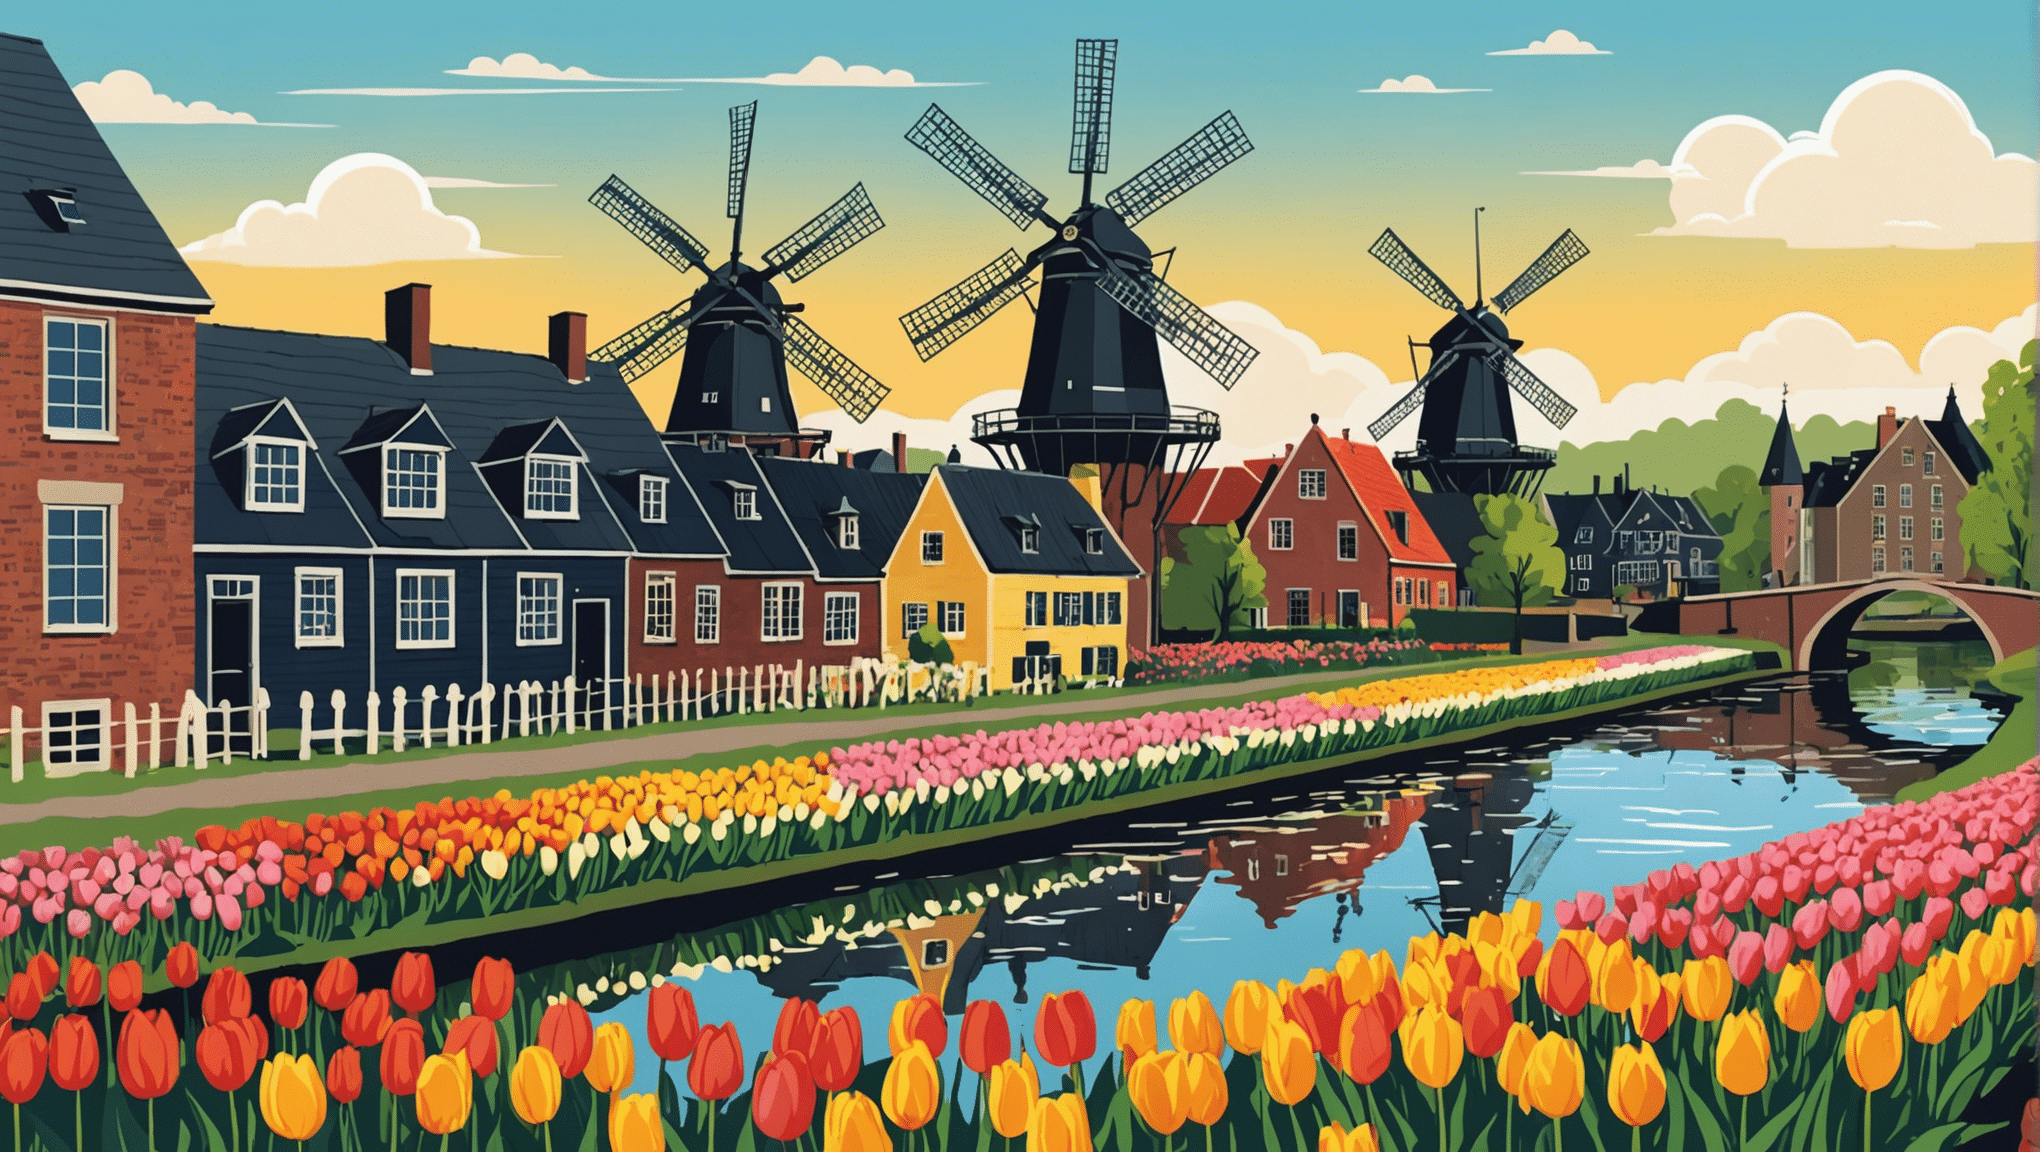 オランダの魅力を発見してください。象徴的な風車、壮大なチューリップ畑、魅力的な運河のあるこの国を巡る忘れられない旅です。